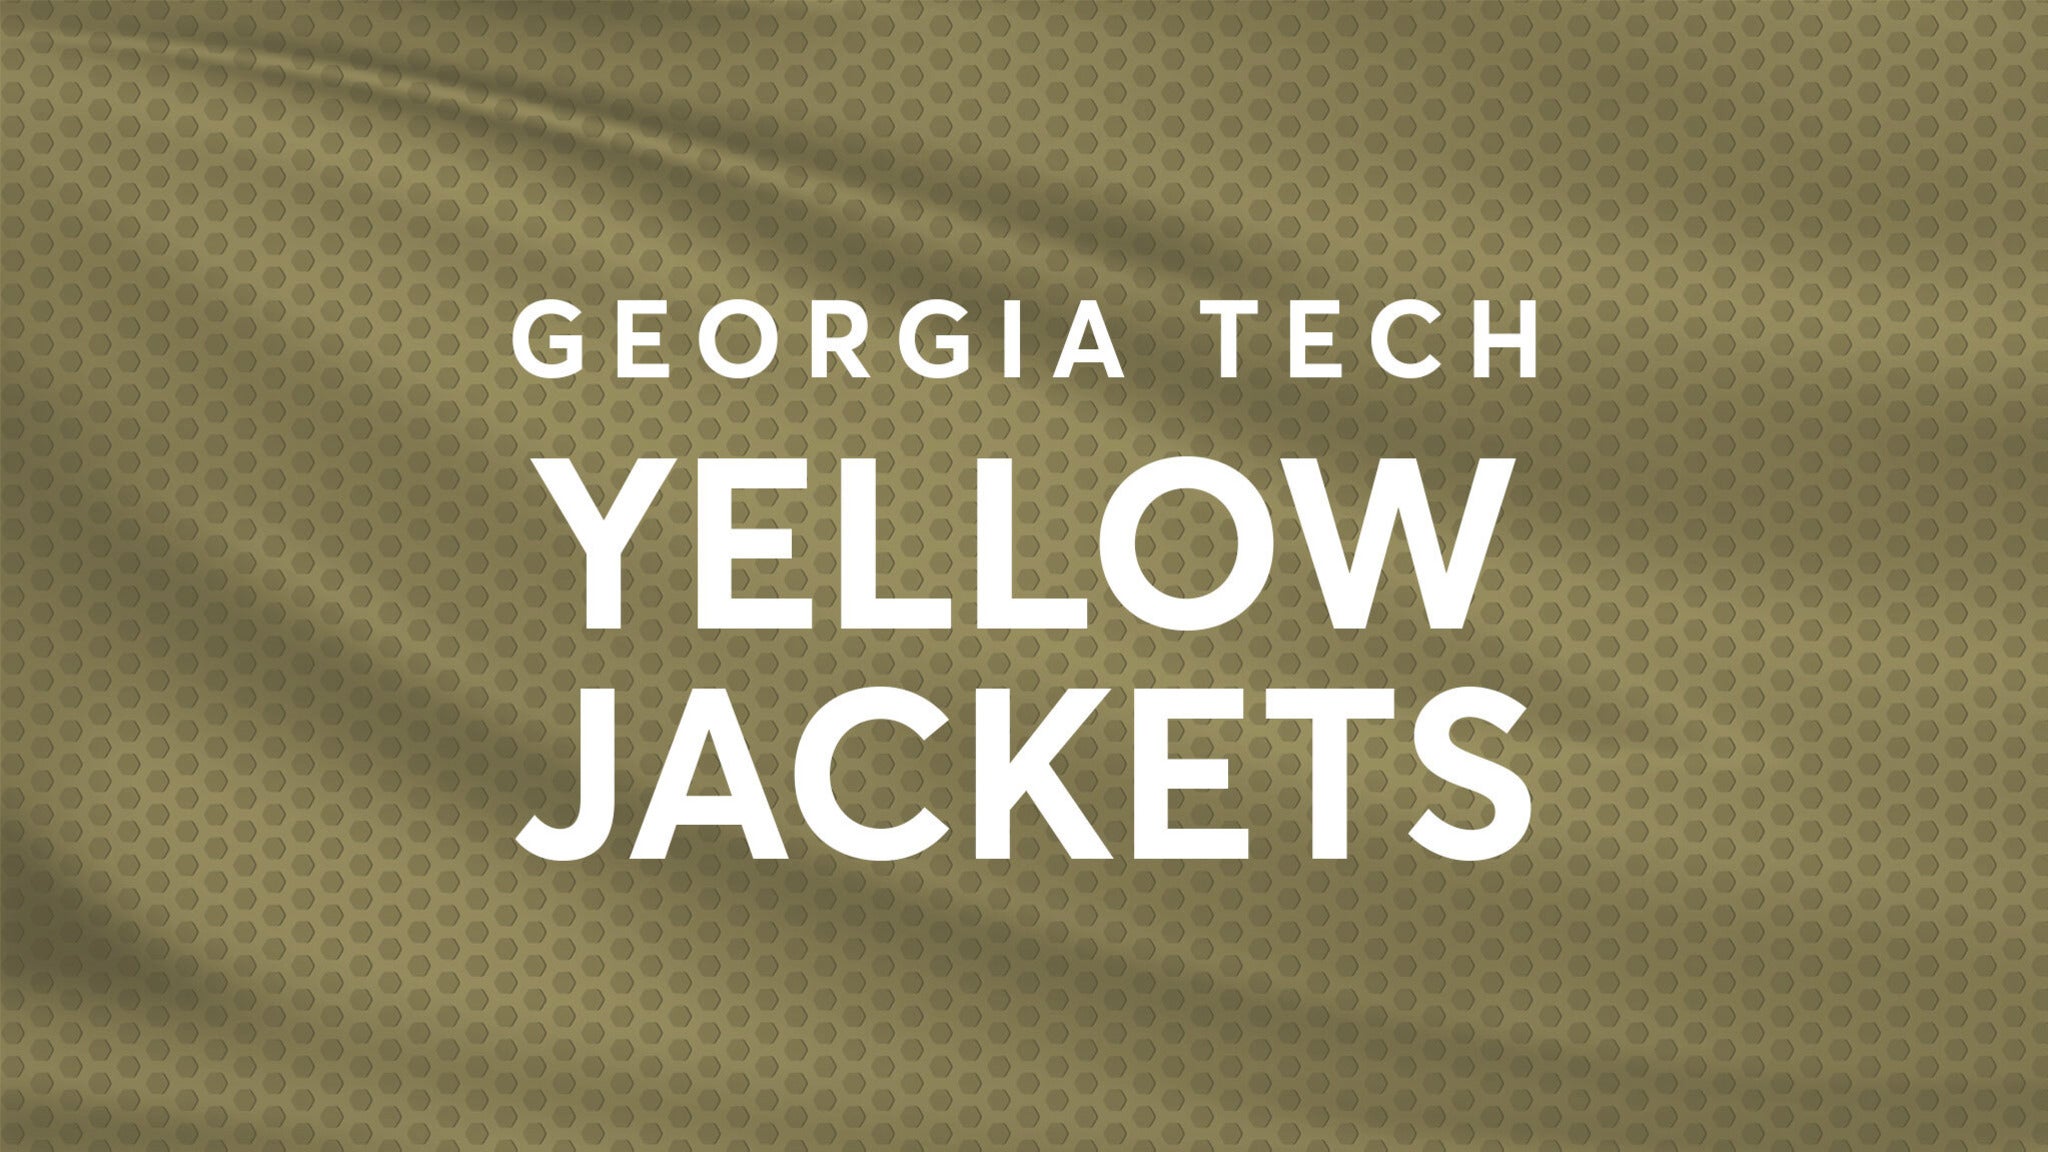 Georgia Tech Yellow Jackets Baseball vs. Duke Blue Devils Baseball